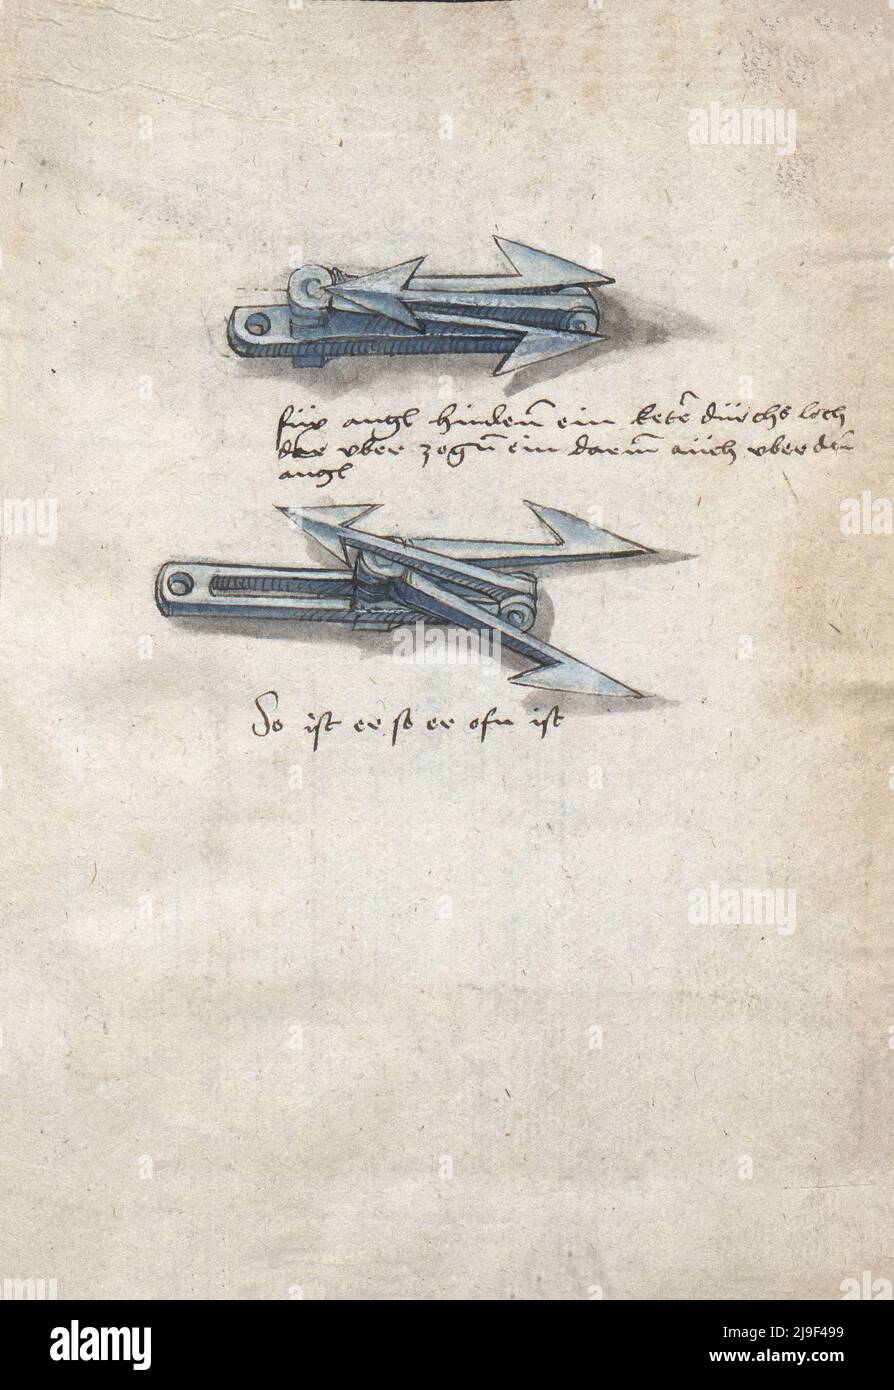 Ilustración medieval de caltrop. Las herramientas de Martin Löffelholz (1505) Löffelholtz Codex. Ilustraciones y descripciones de todo tipo de herramientas manuales, Foto de stock